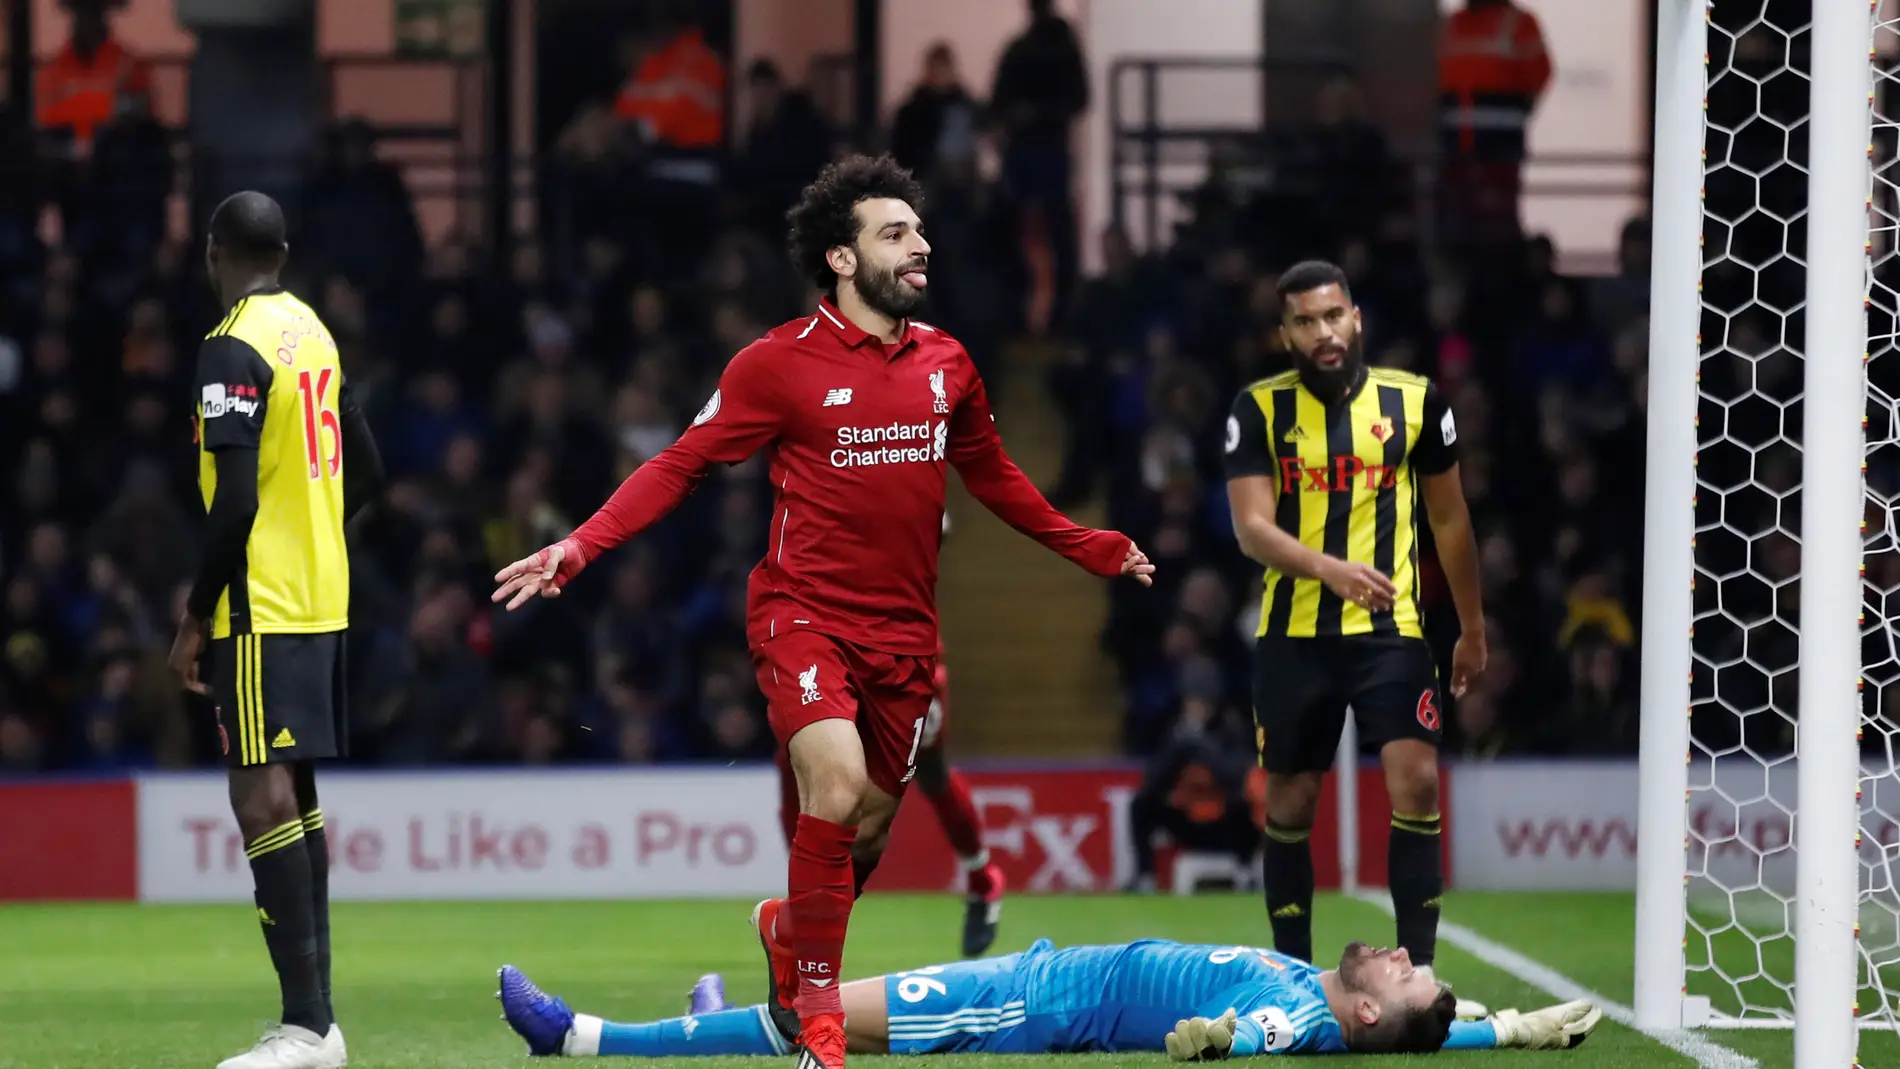 Salah celebra su gol contra el Watford